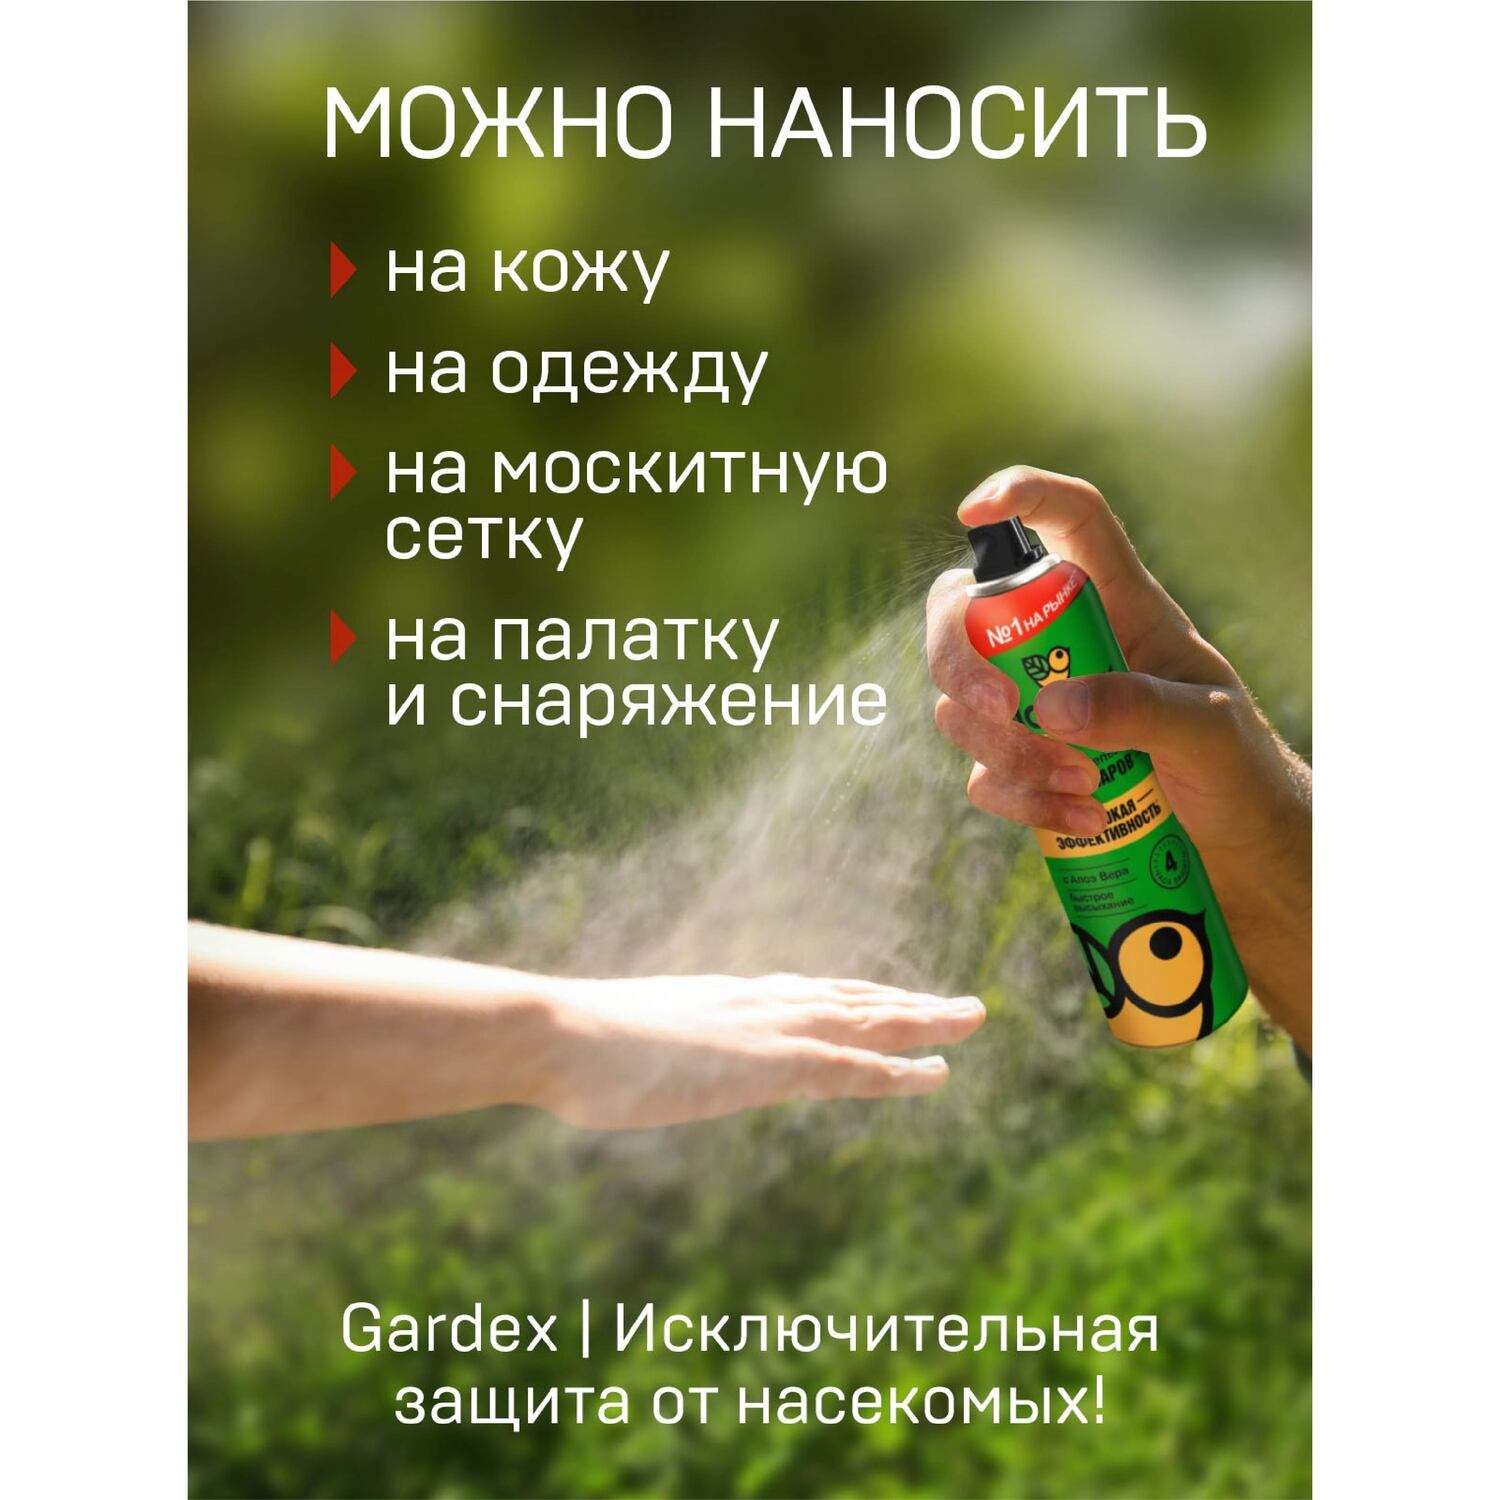 Аэрозоль-репеллент от комаров Gardex Family 150 мл 2 шт - фото 4